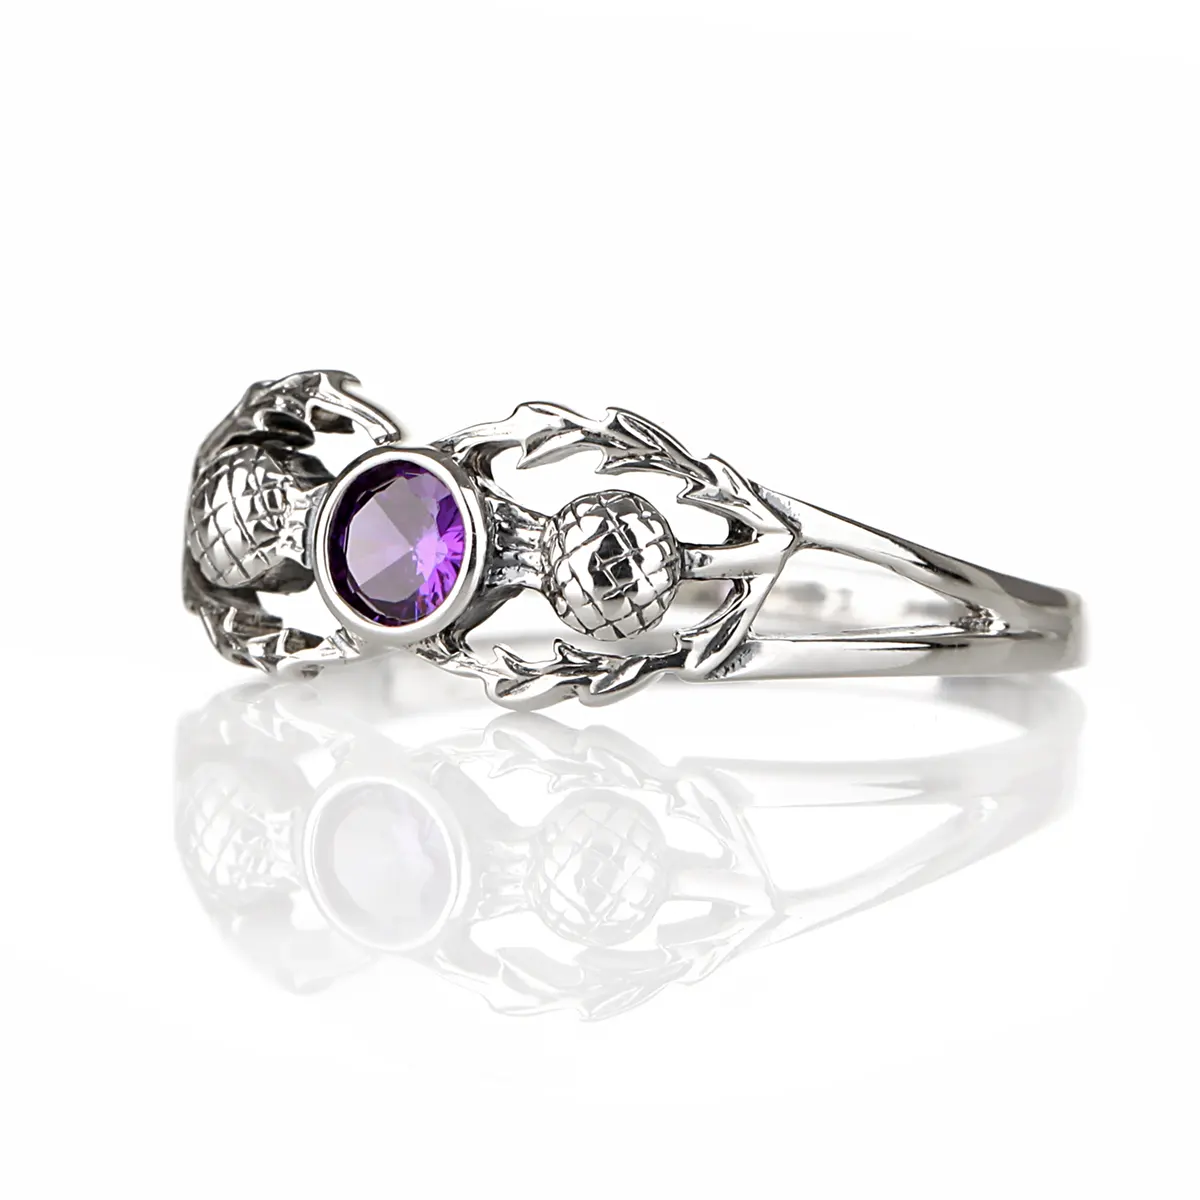 Crystal Scottish Thistle - Sterling Silber Ring mit schottischen Disteln & Kristall